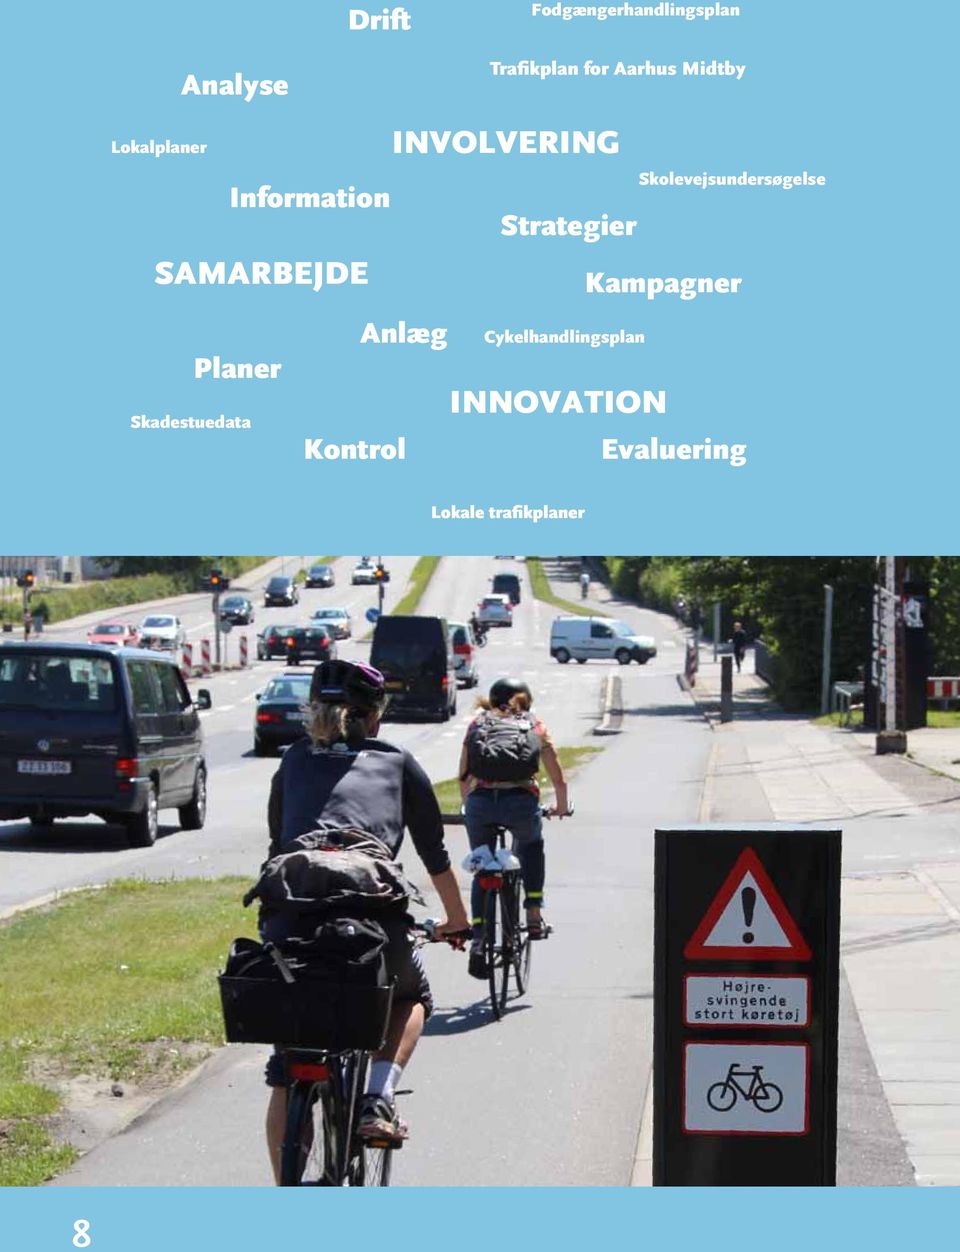 Planer INVOLVERING Anlæg Cykelhandlingsplan INNOVATION